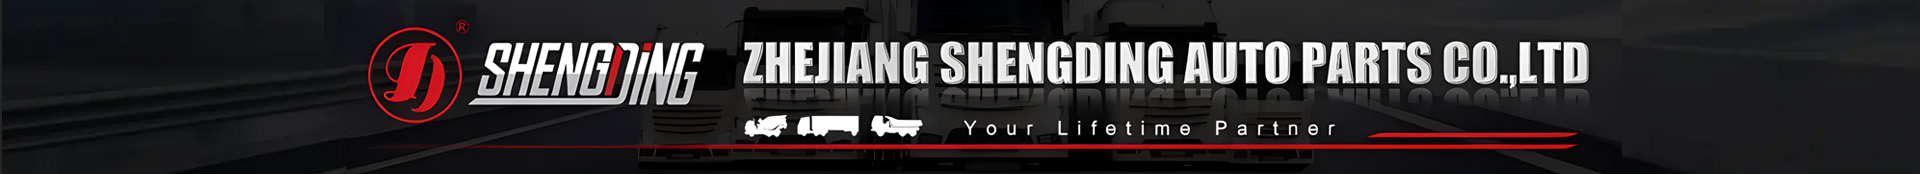 Zhejiang Shengding Auto Parts Co.,Ltd